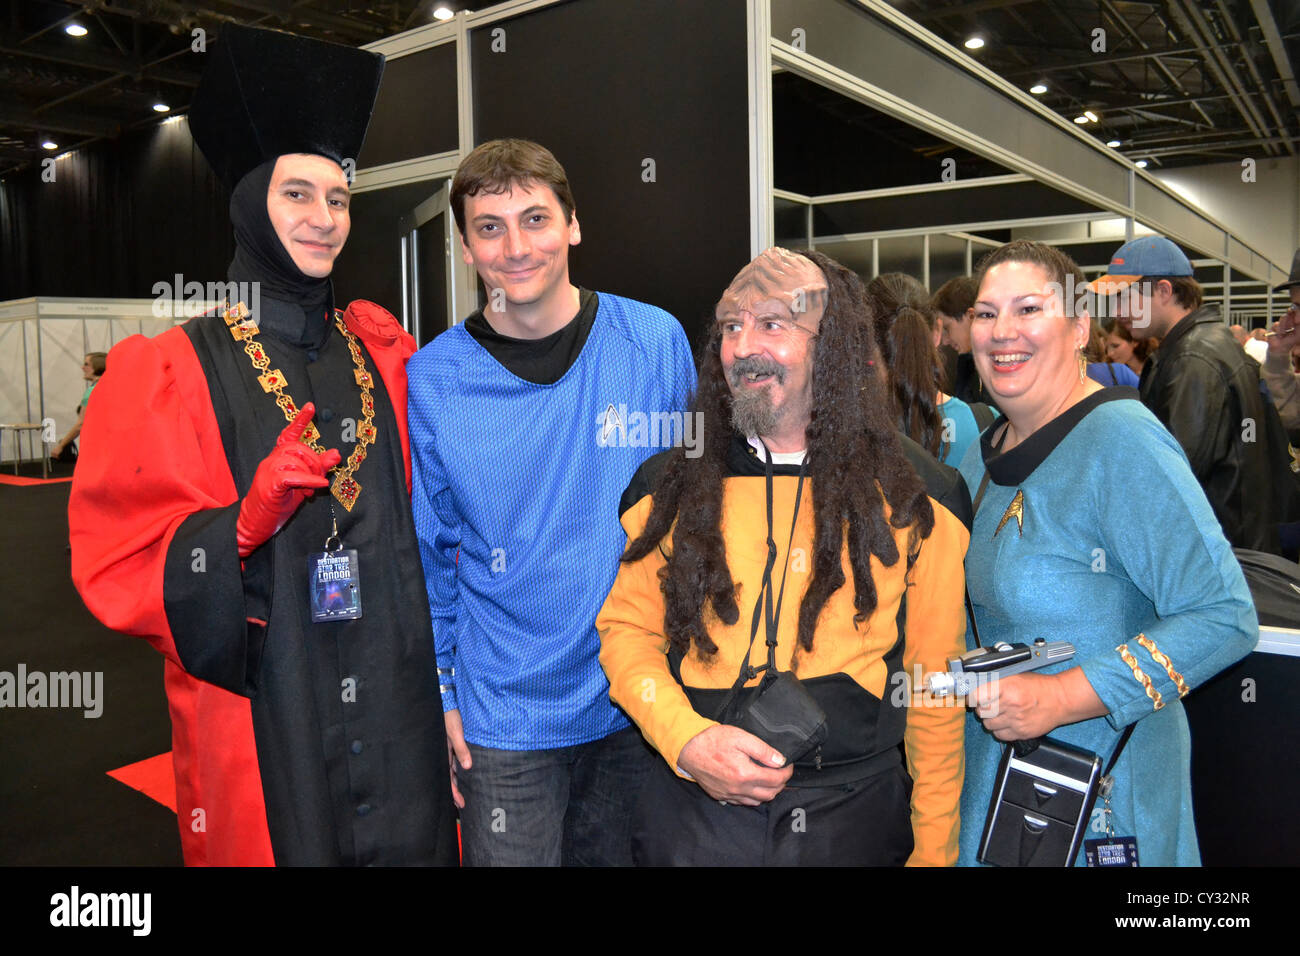 Star Trek-Fans verkleidet auf der Star Trek Convention, London. Stockfoto